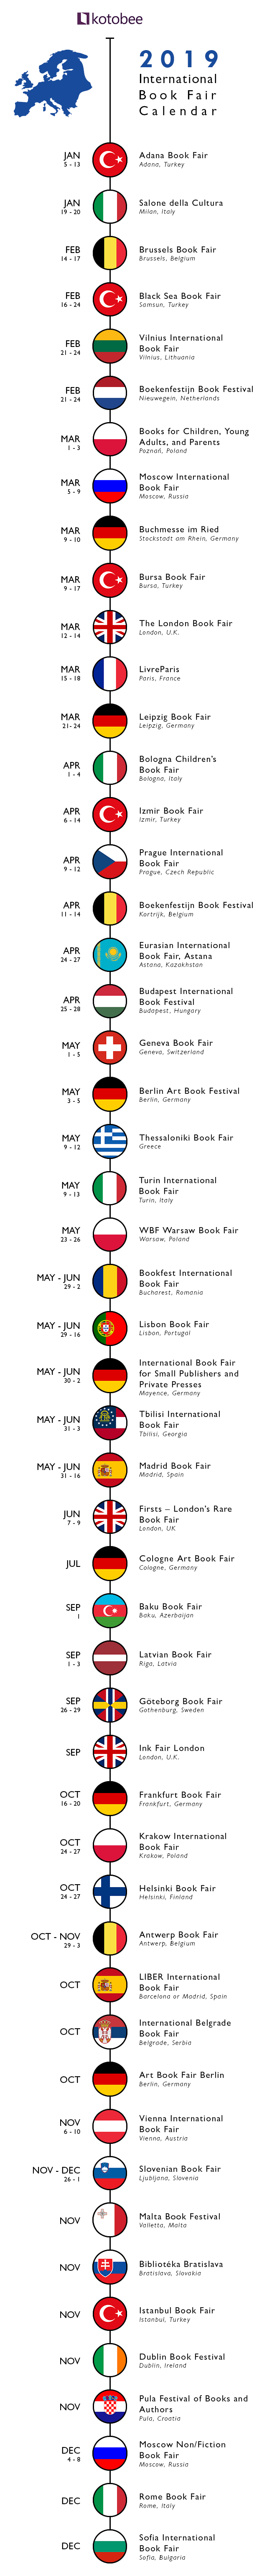 Book fairs - EUROPE